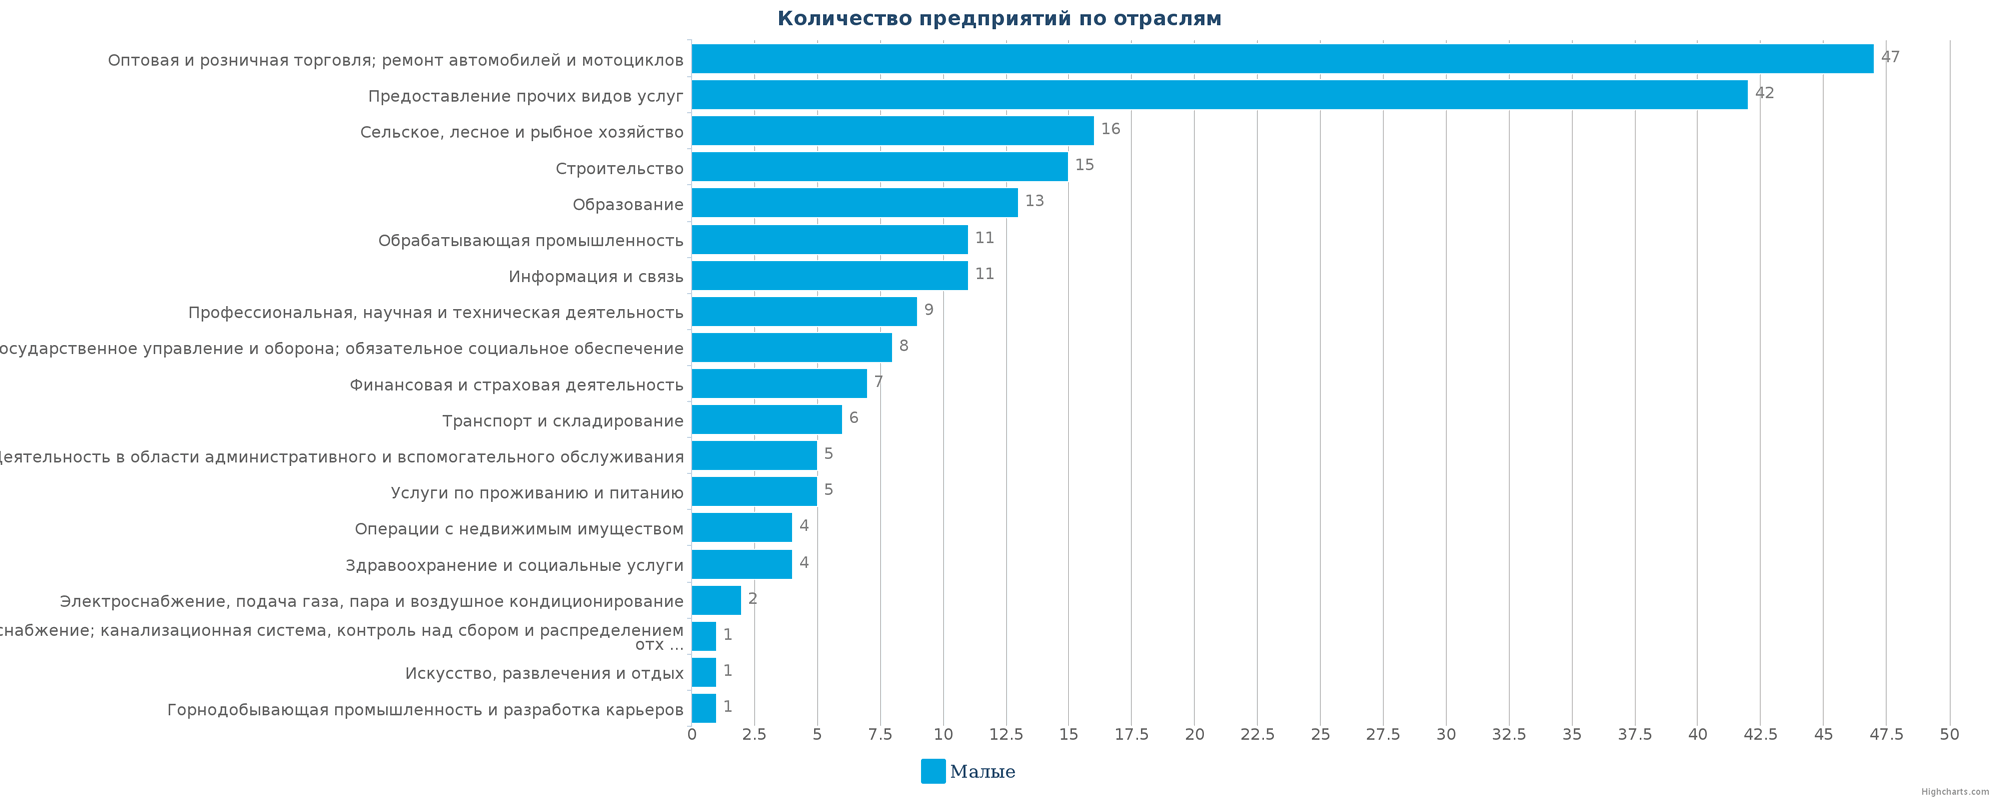 Новые компании в базе данных Казахстана